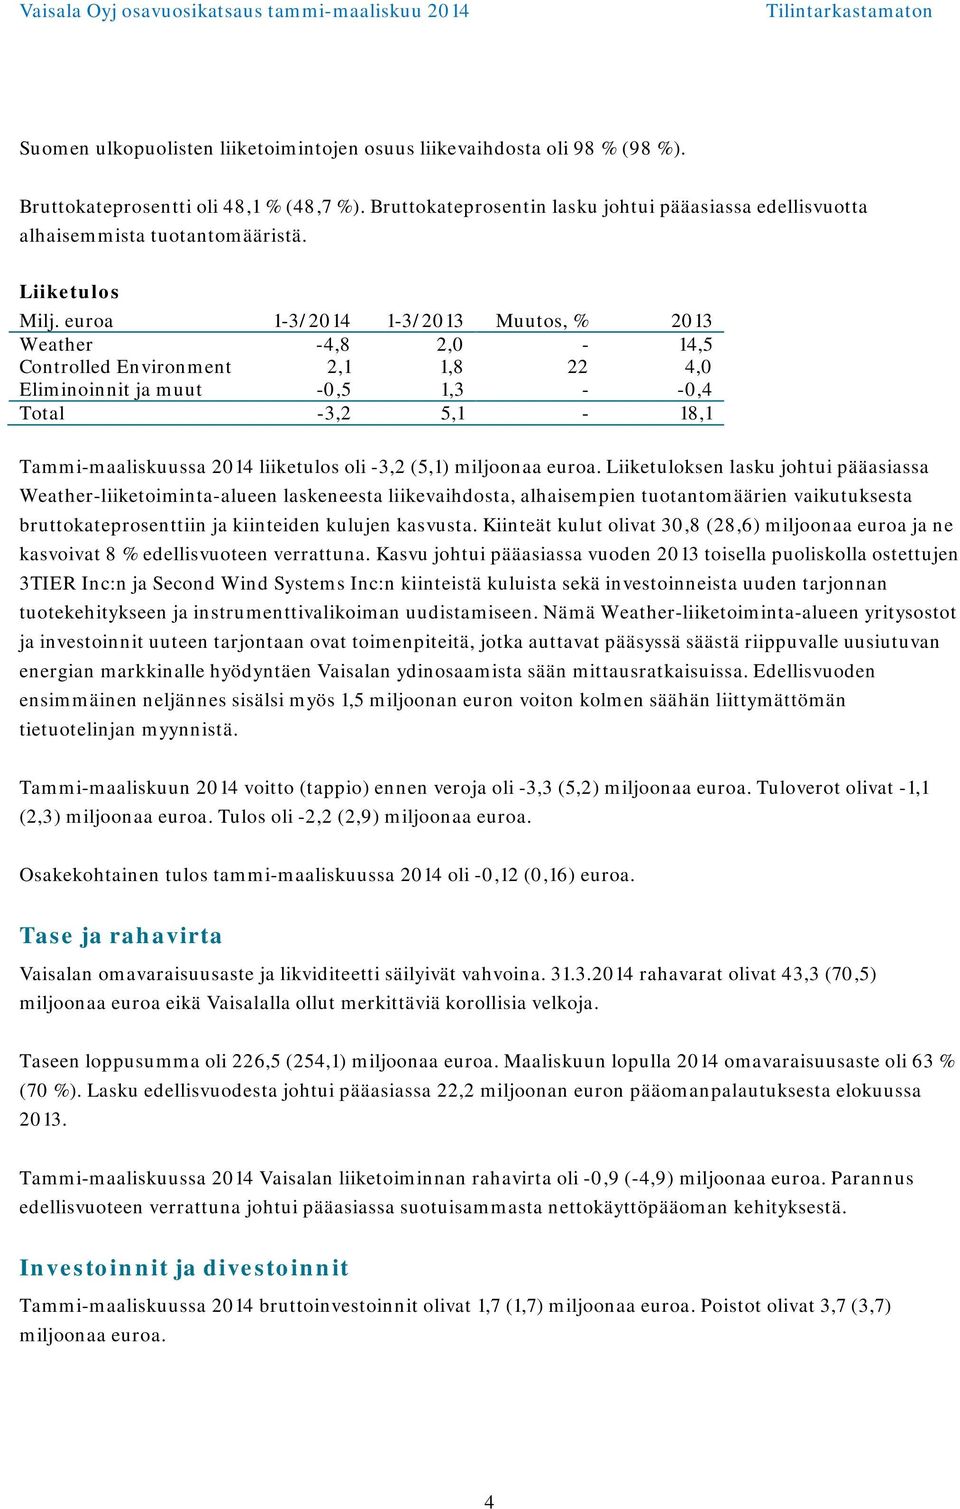 euroa 1-3/2014 1-3/2013 Muutos, % 2013 Weather -4,8 2,0-14,5 Controlled Environment 2,1 1,8 22 4,0 Eliminoinnit ja muut -0,5 1,3 - -0,4 Total -3,2 5,1-18,1 Tammi-maaliskuussa 2014 liiketulos oli -3,2